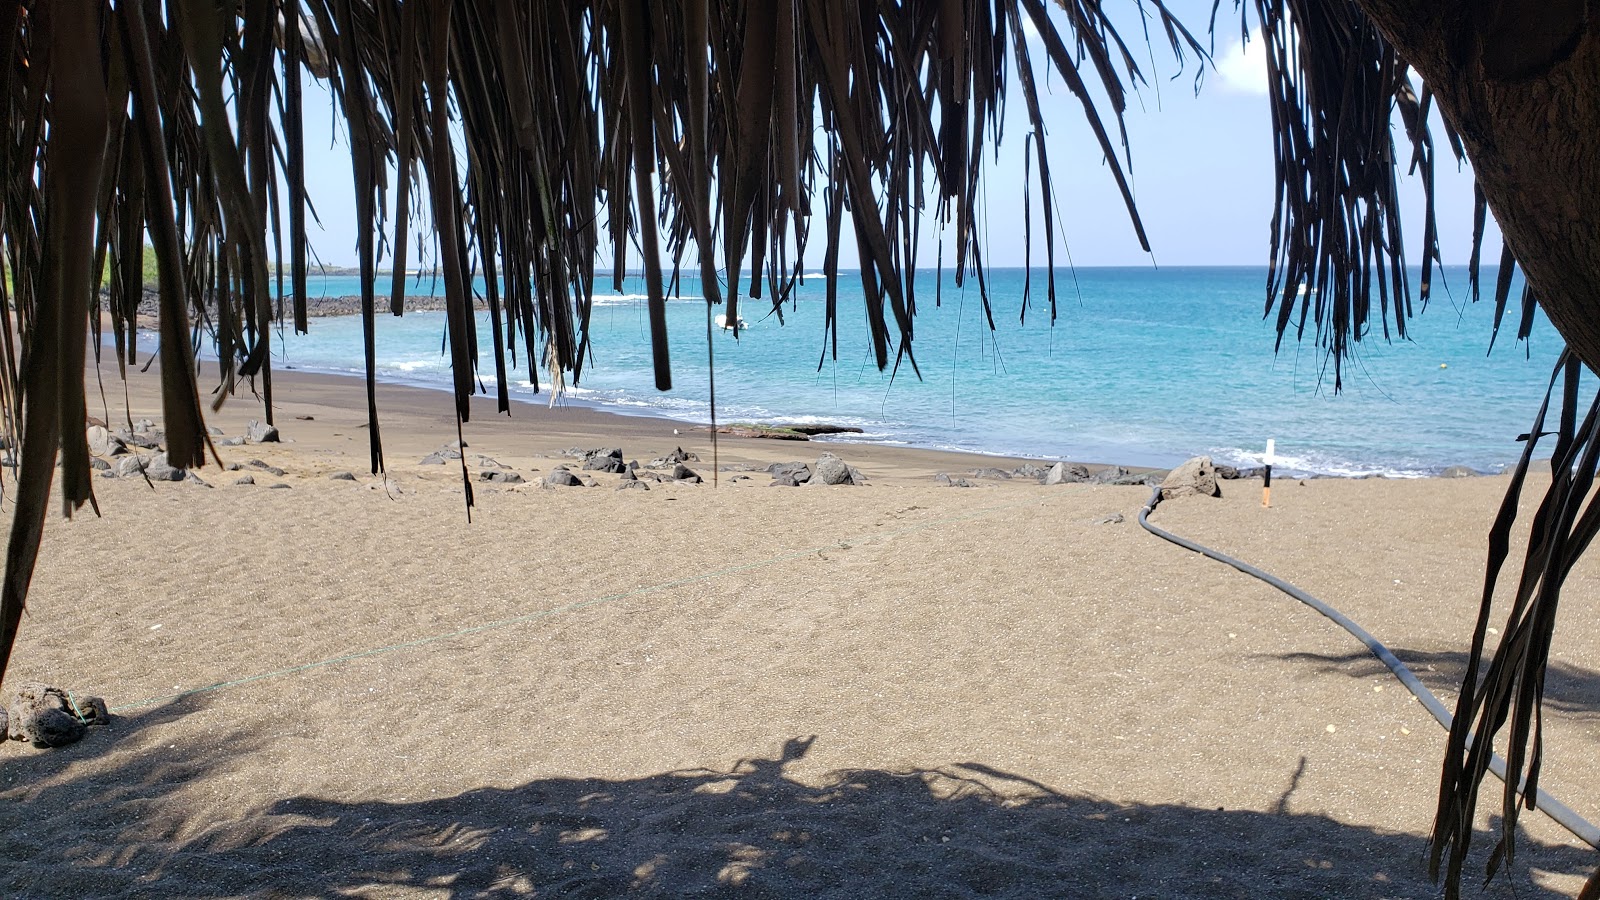 Playa Negra'in fotoğrafı imkanlar alanı